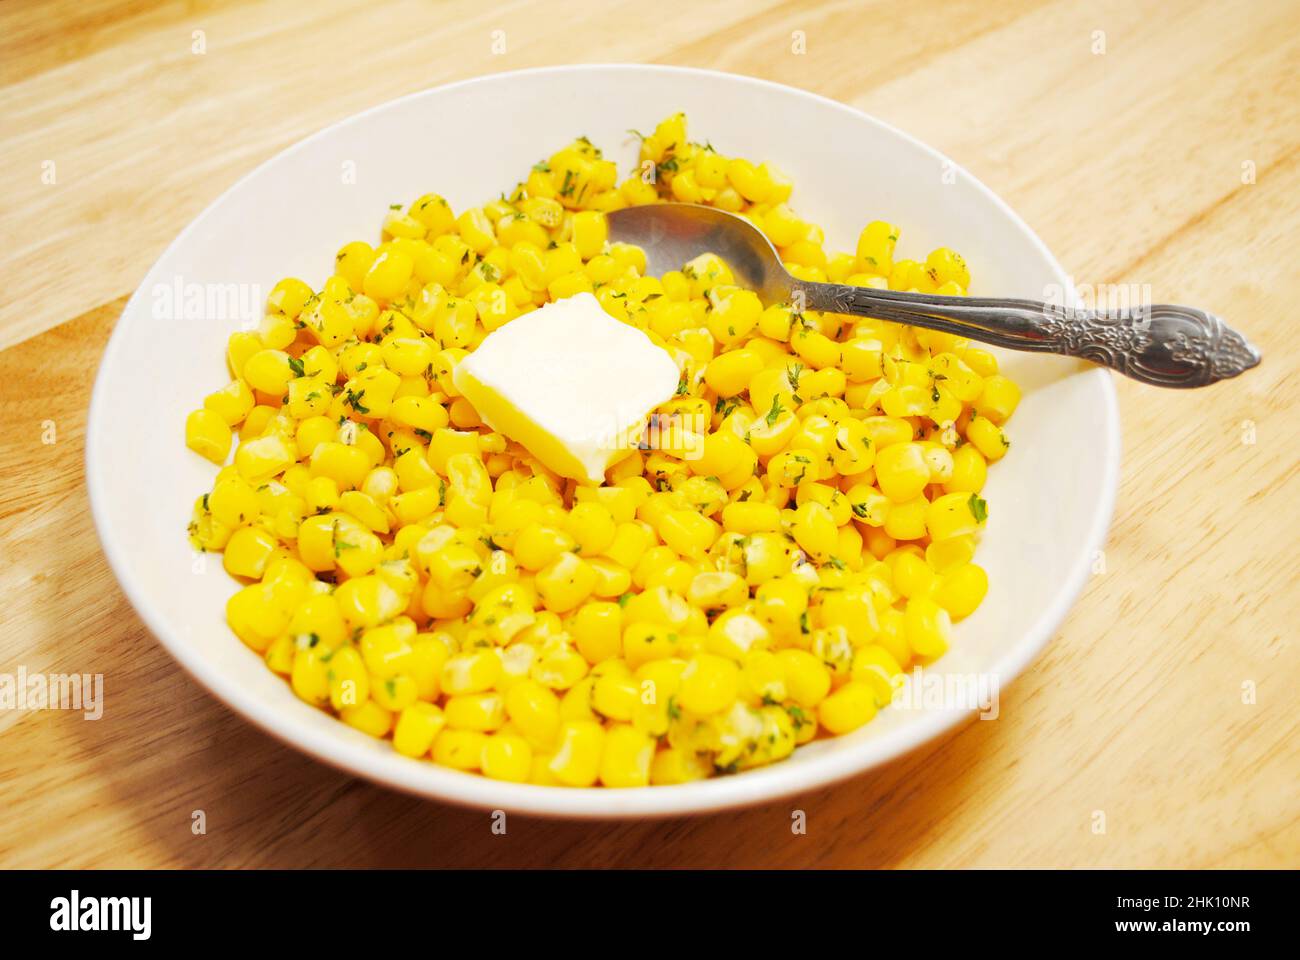 Maïs jaune frais servi dans un bol blanc avec une Pat de beurre Banque D'Images